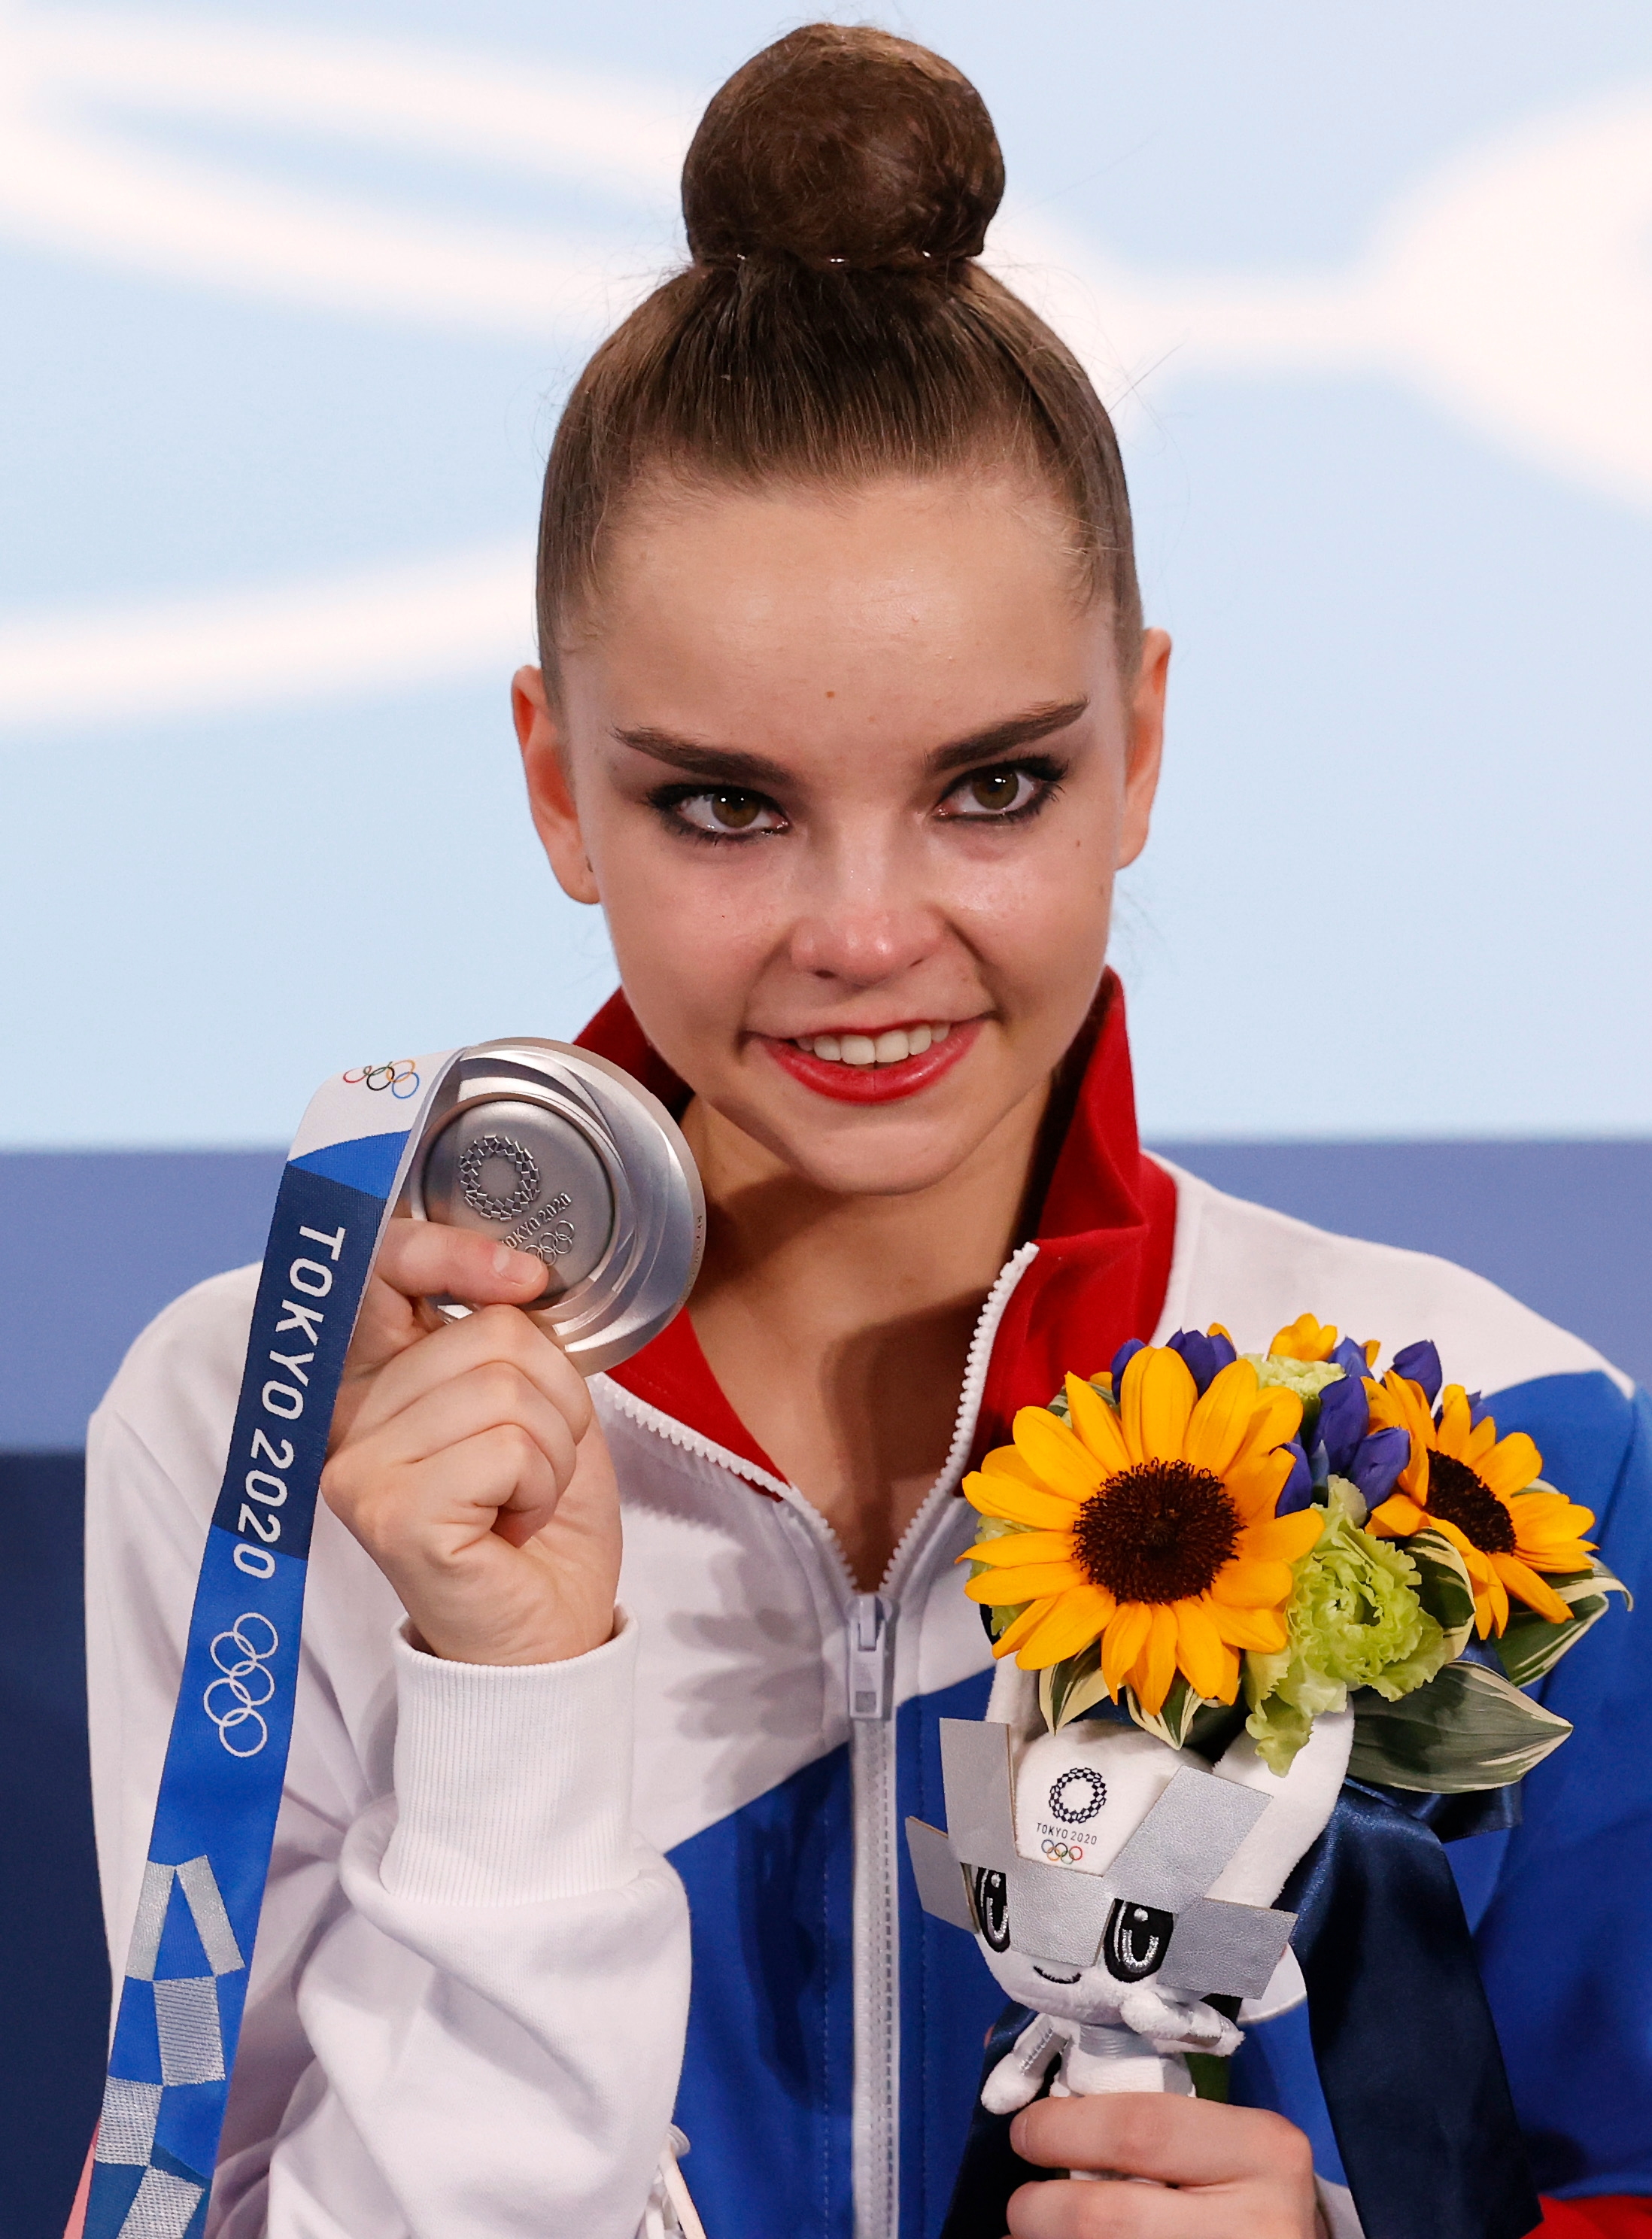 Дина Аверина выиграла серебряную медаль в личном многоборье по художественной гимнастике, уступив первому месту всего 0,150 балла. Российская делегация подавала протест на судейские оценки, однако он не был удовлетворен. Россия впервые с 1996 года не выиграла золотую медаль в художественной гимнастике